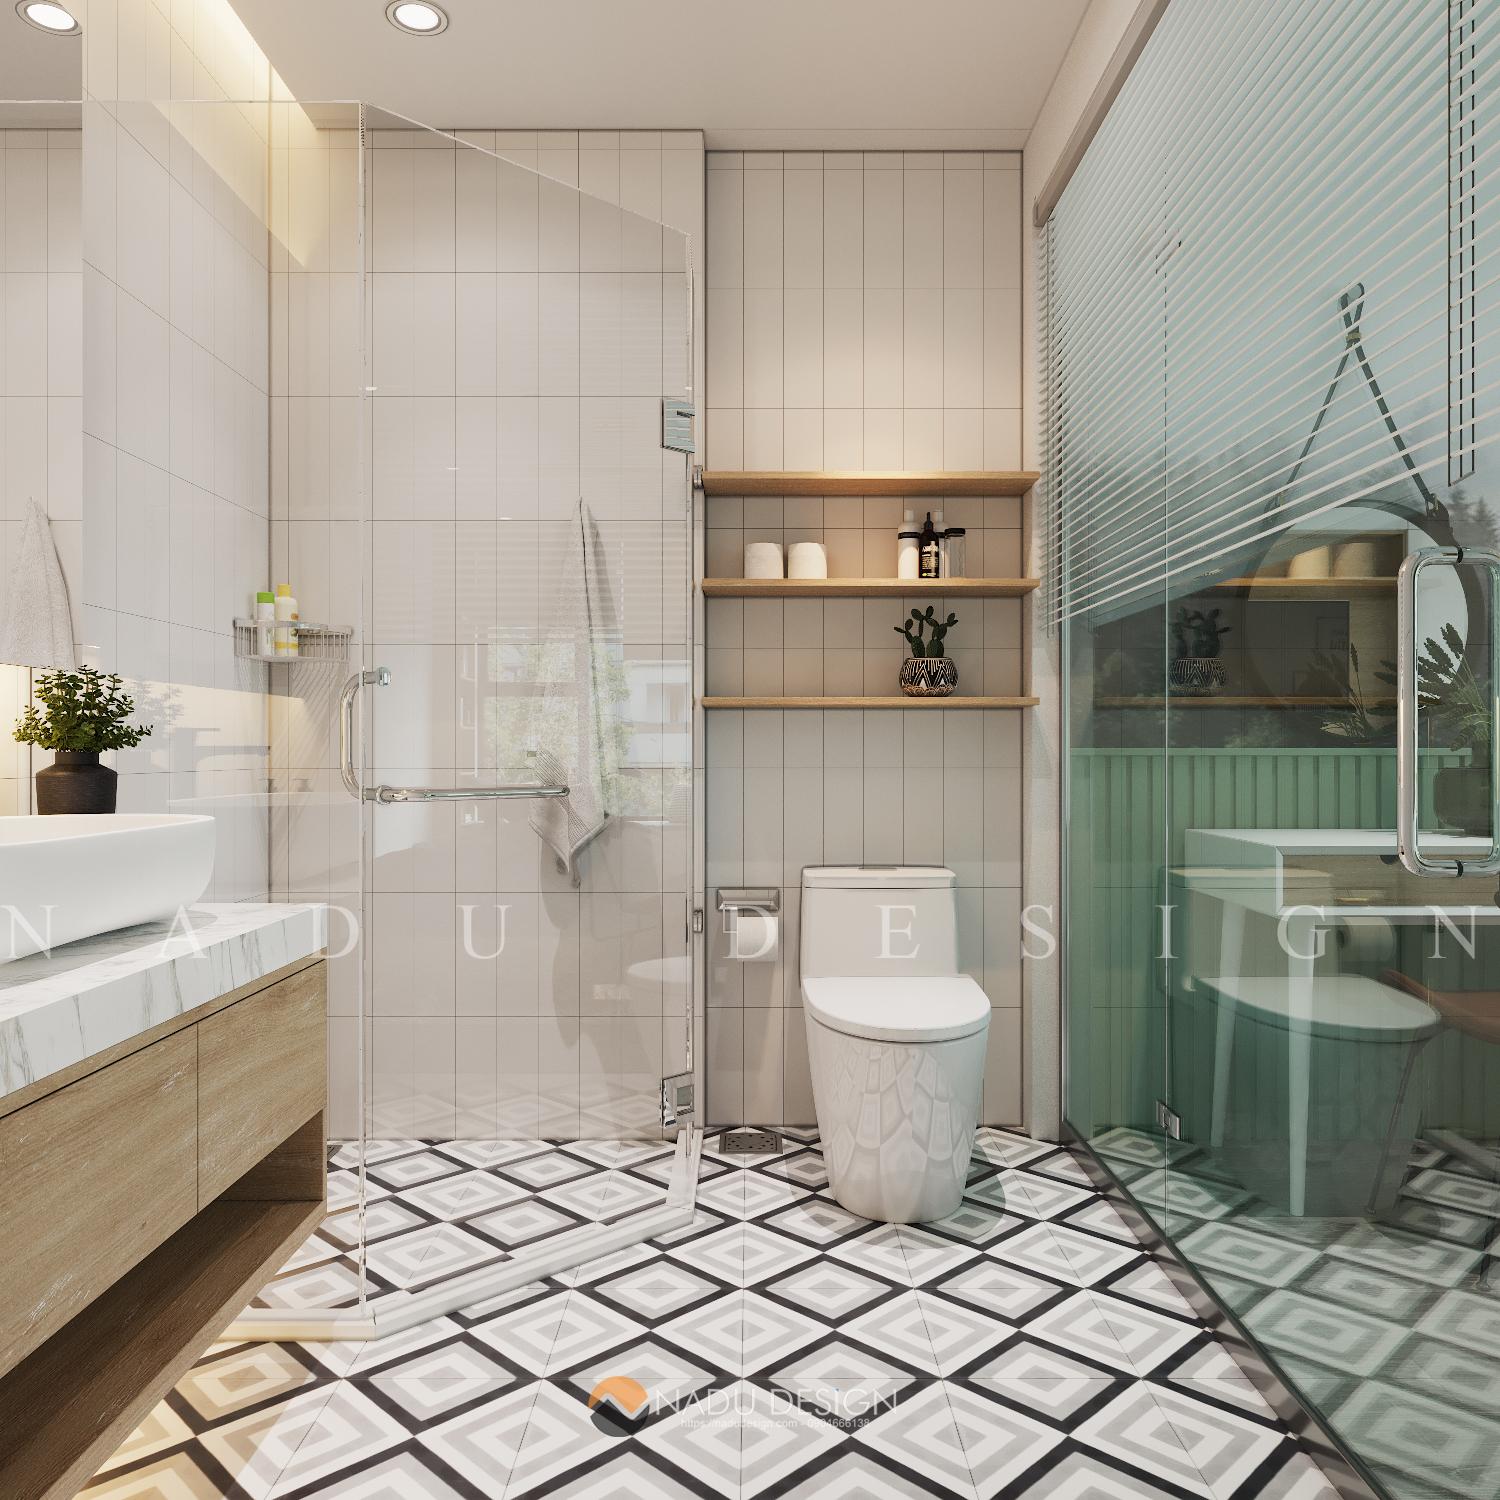 Hướng dẫn cách thiết kế sàn nhà vệ sinh kiến trúc và bền vững nhất